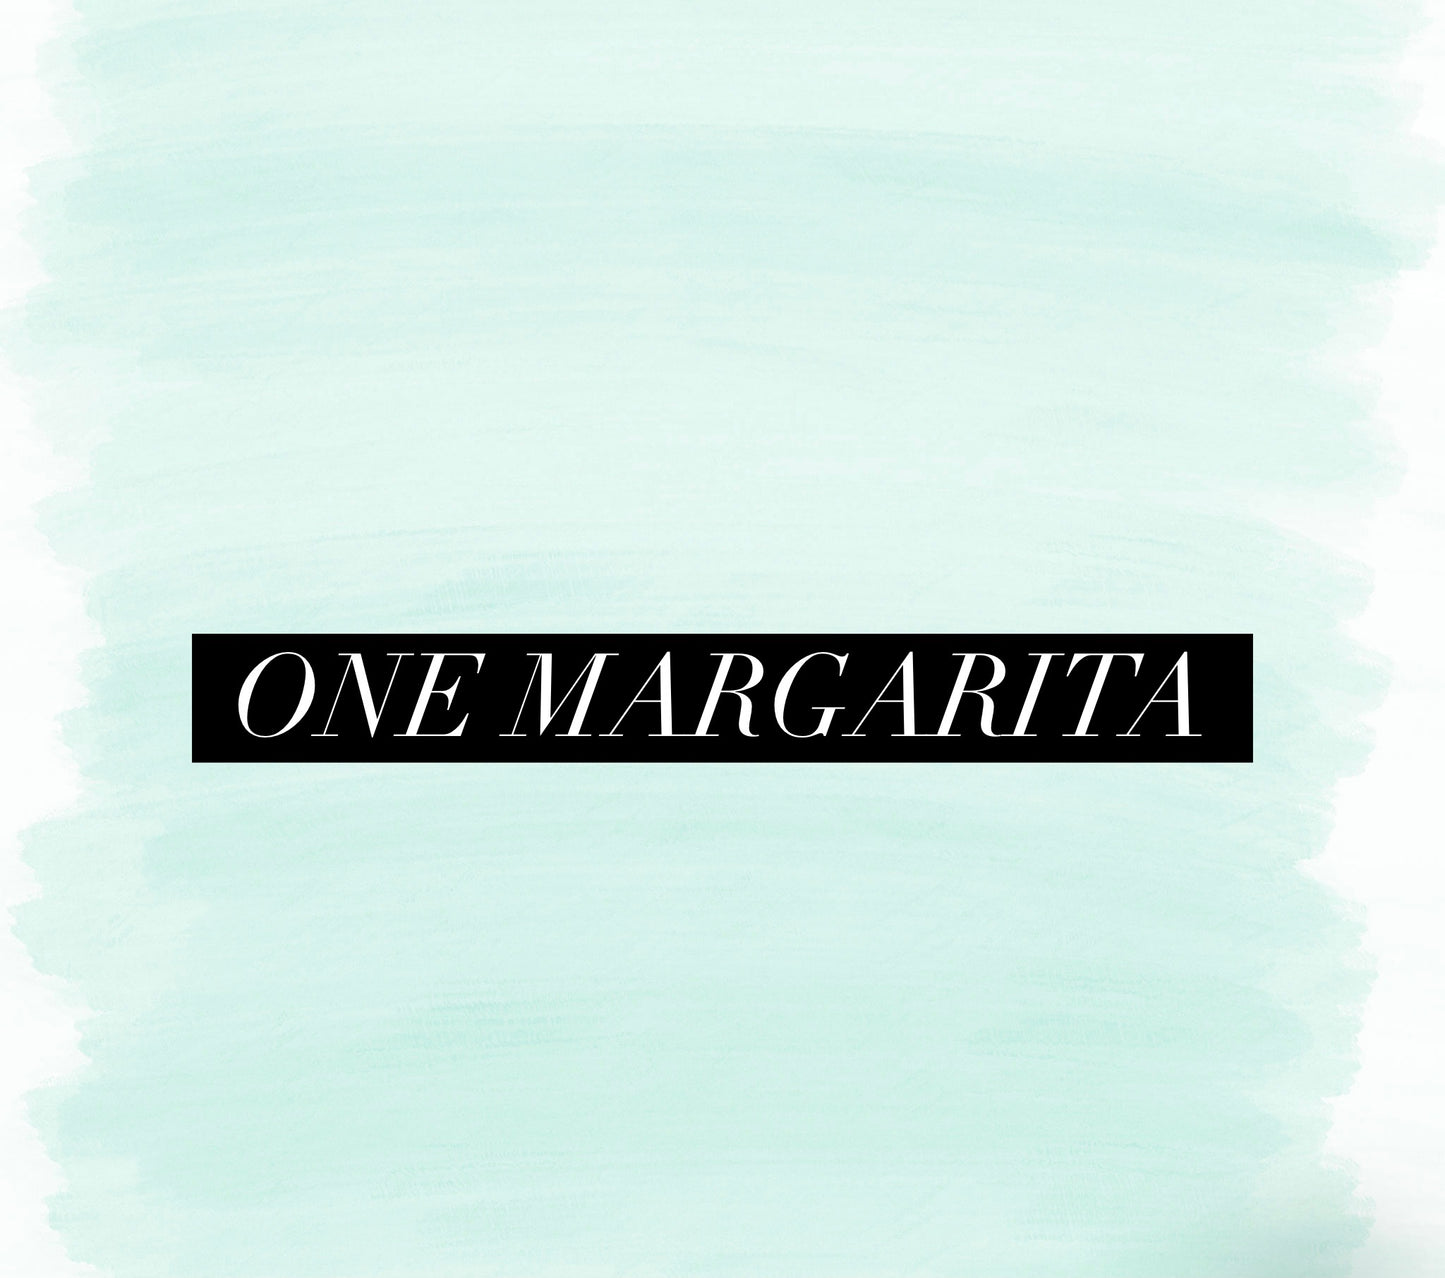 One Margarita